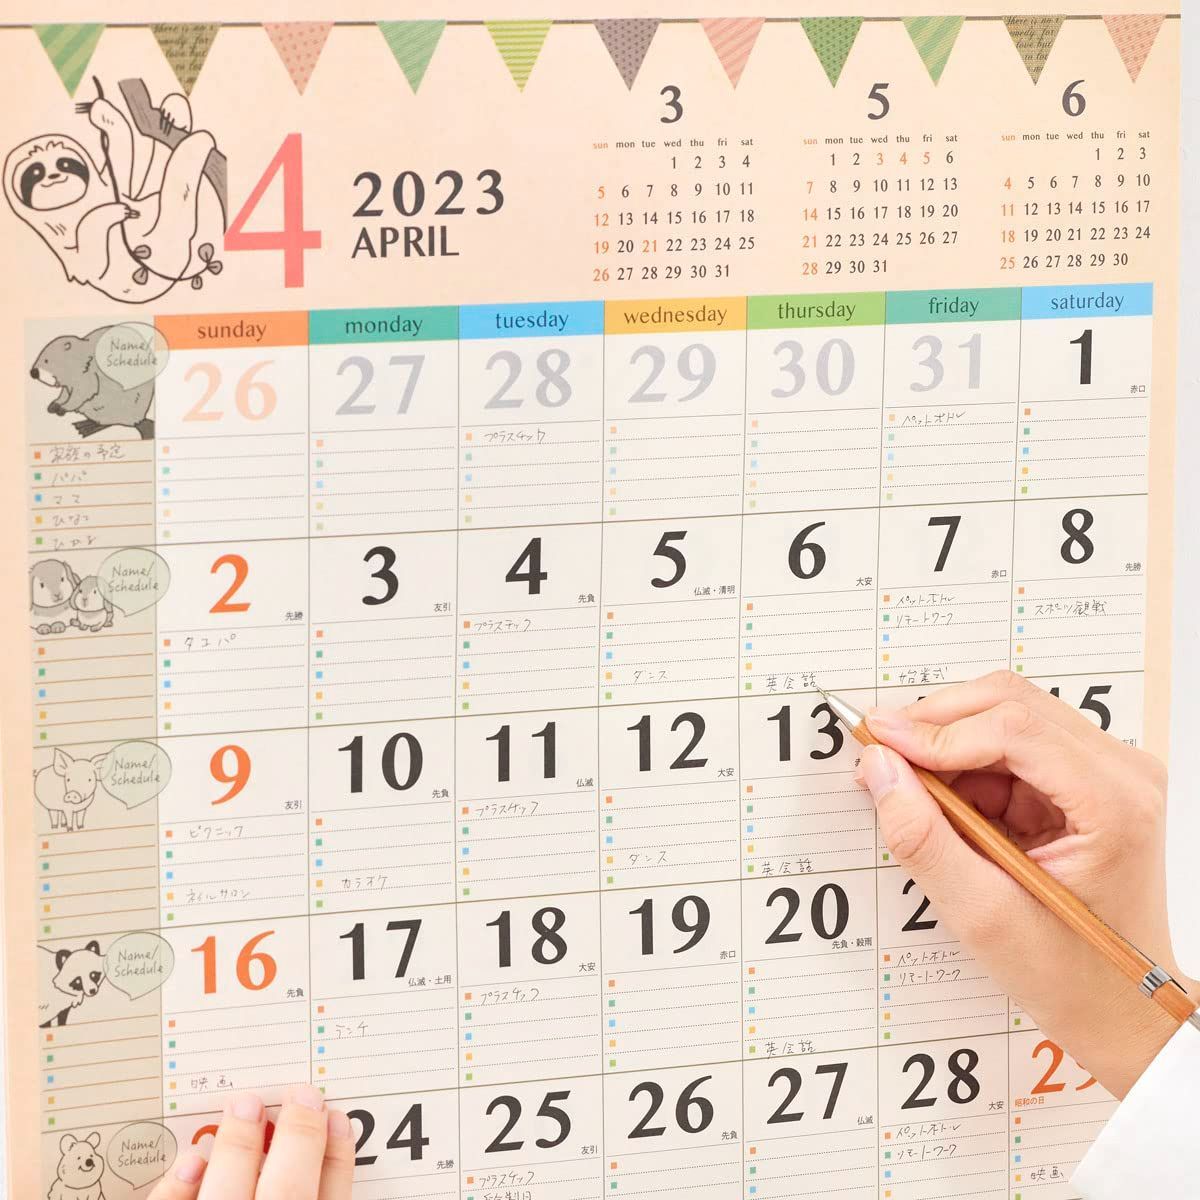 【数量限定】NK31 アニマルファミリー 壁掛け カレンダー 2023年 新日本-3